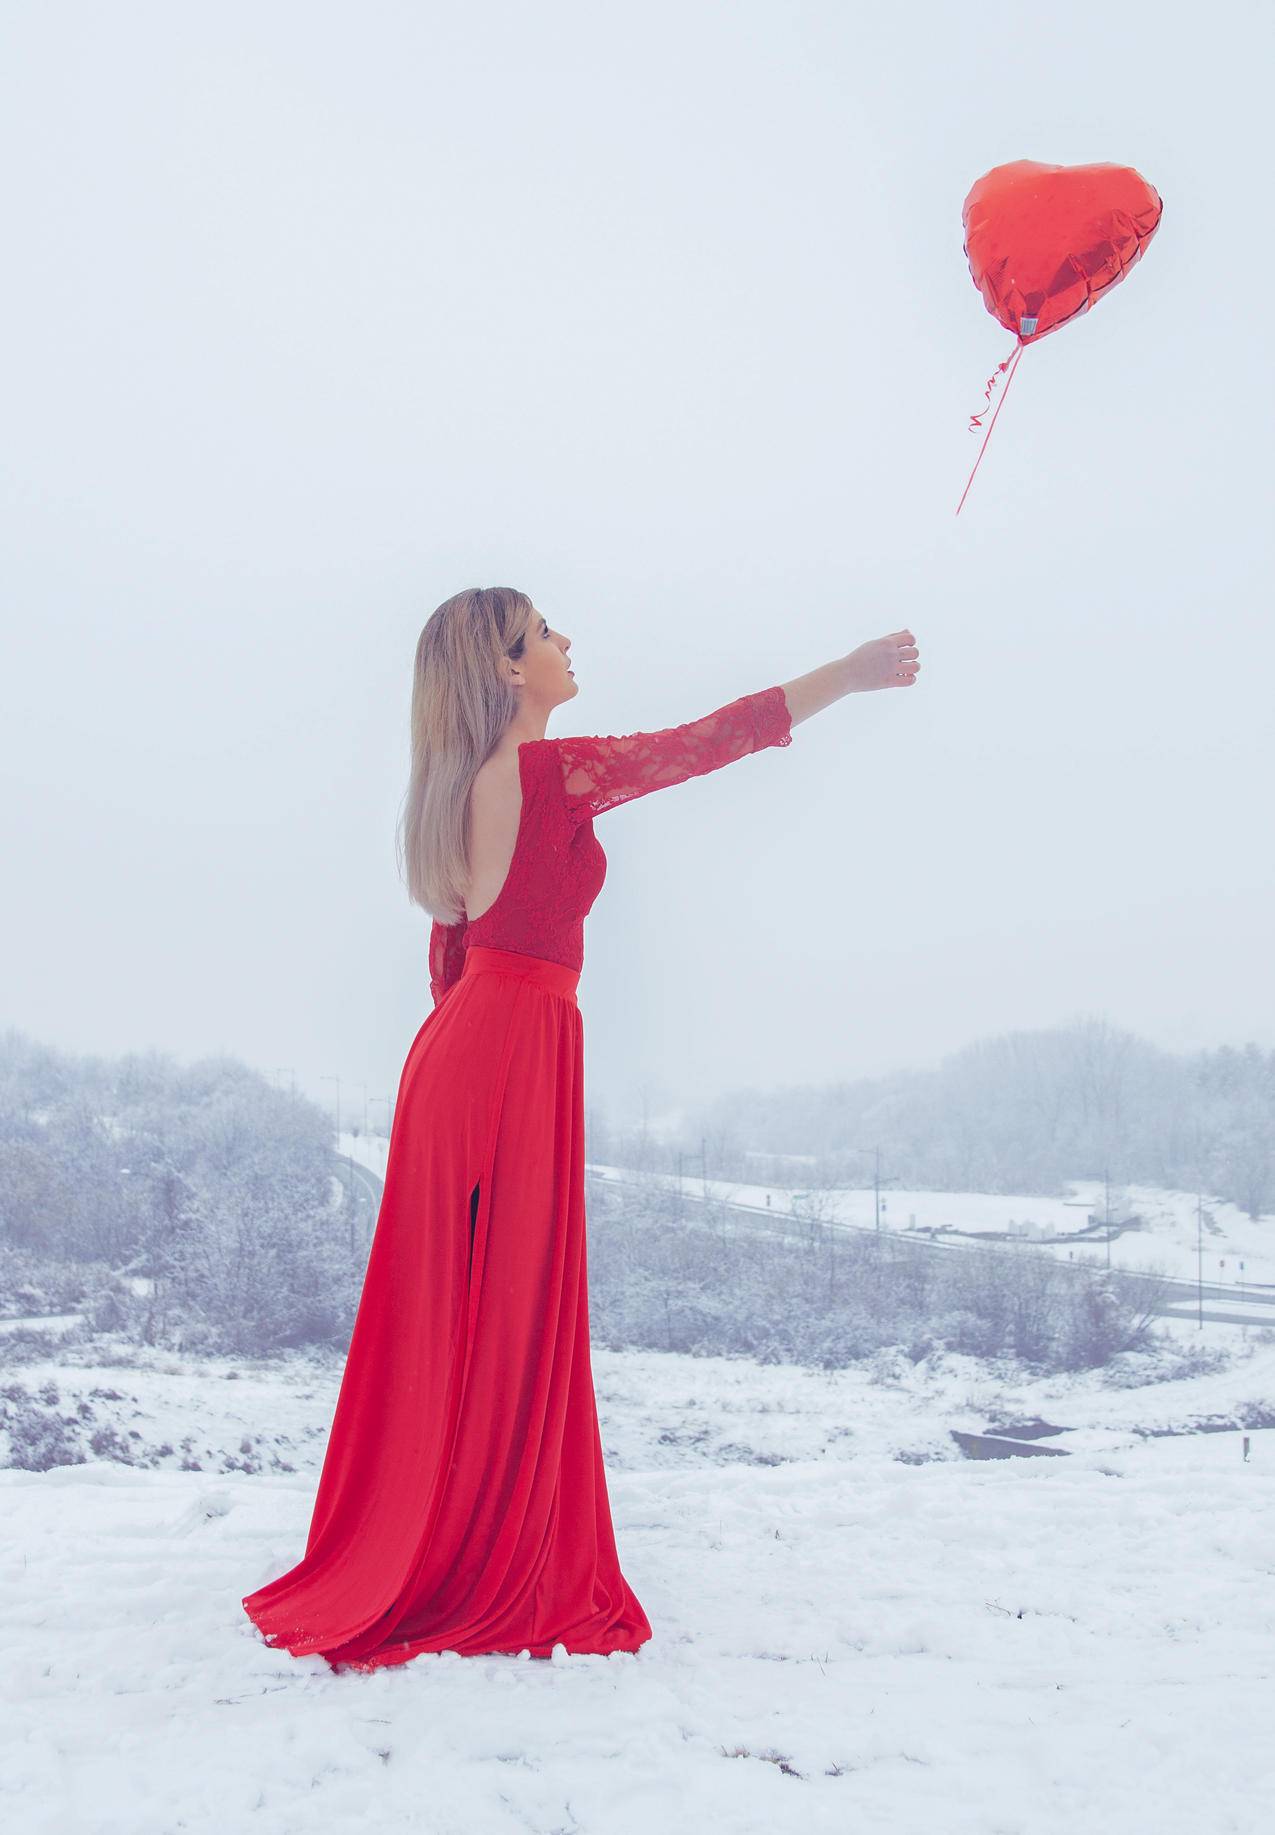 穿着红色花边长袖礼服的女士站在红心气球上